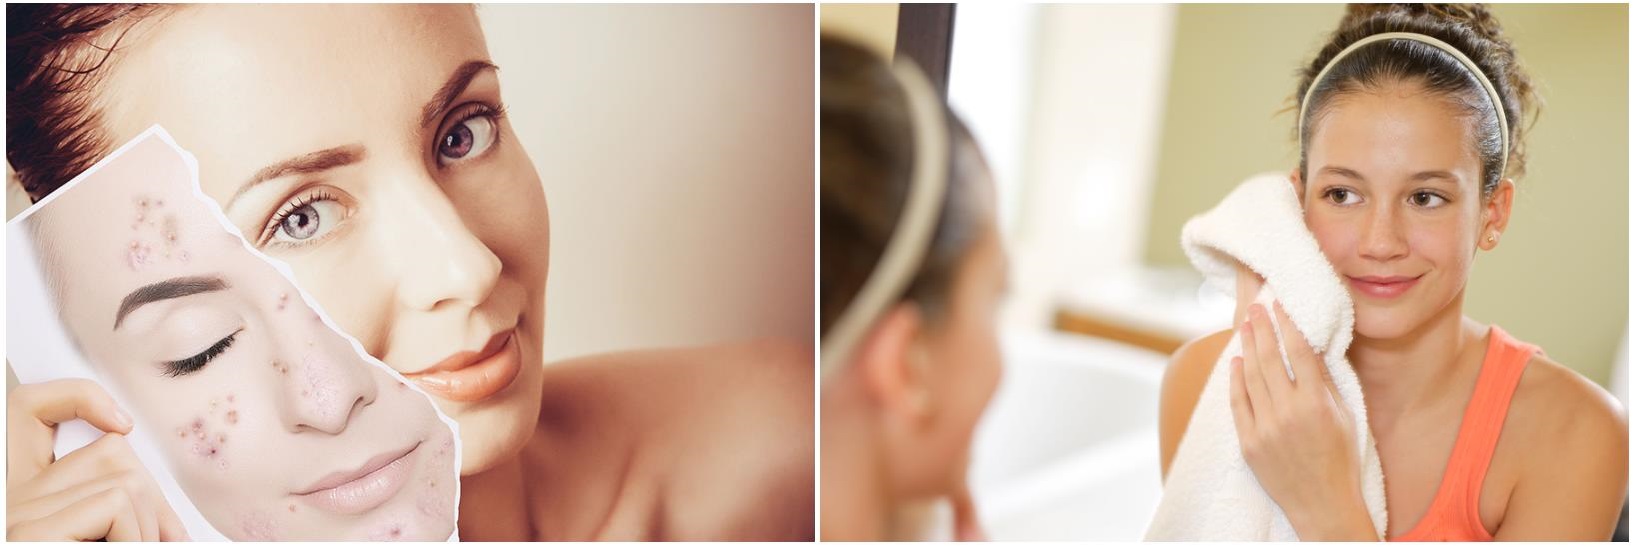 Инъекции для кожи лица, чистки и шлифовки в косметологической клинике